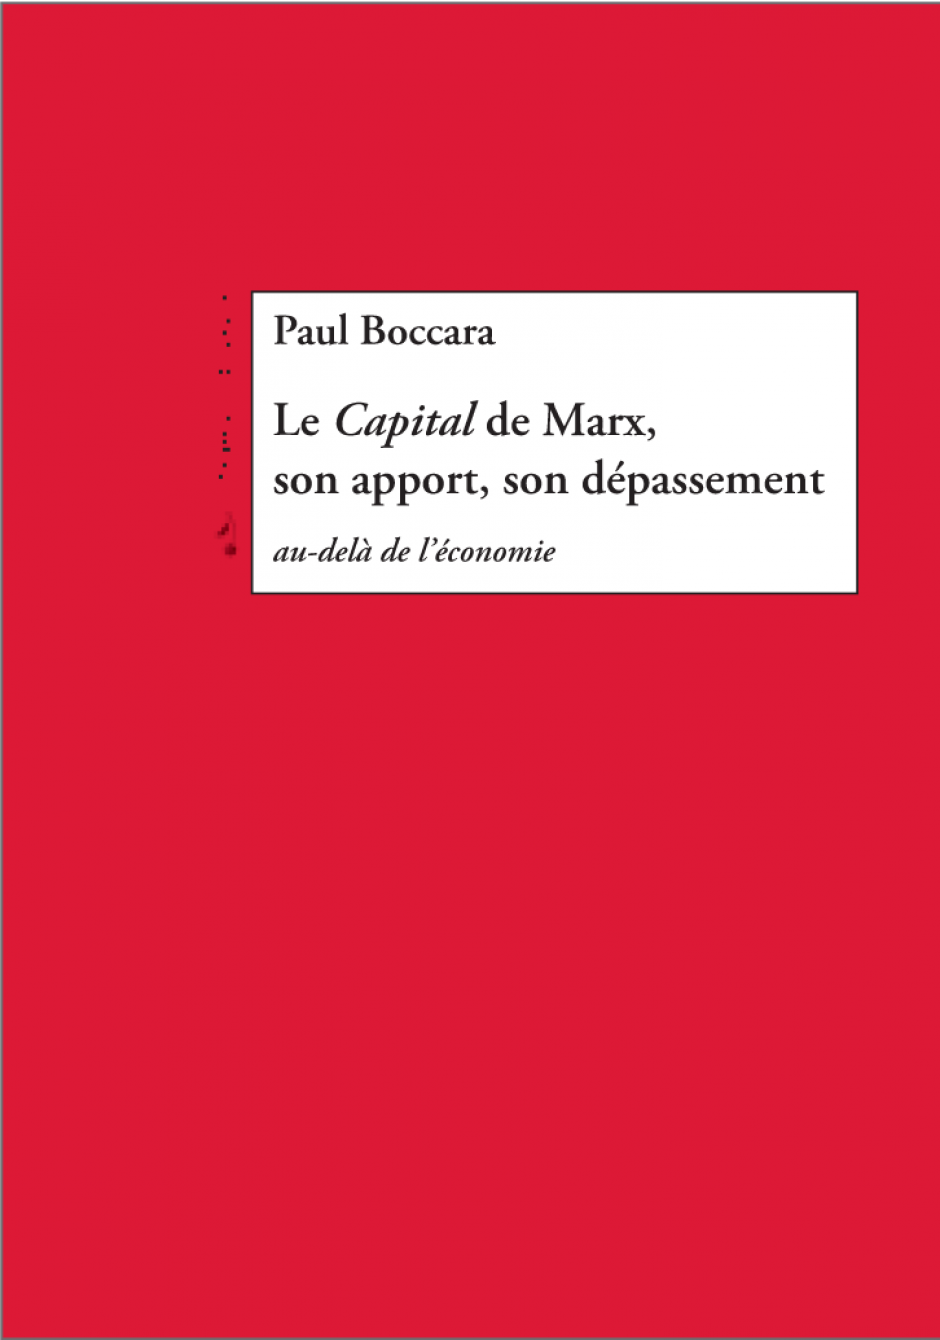 Nouvelle publication de Paul Boccara